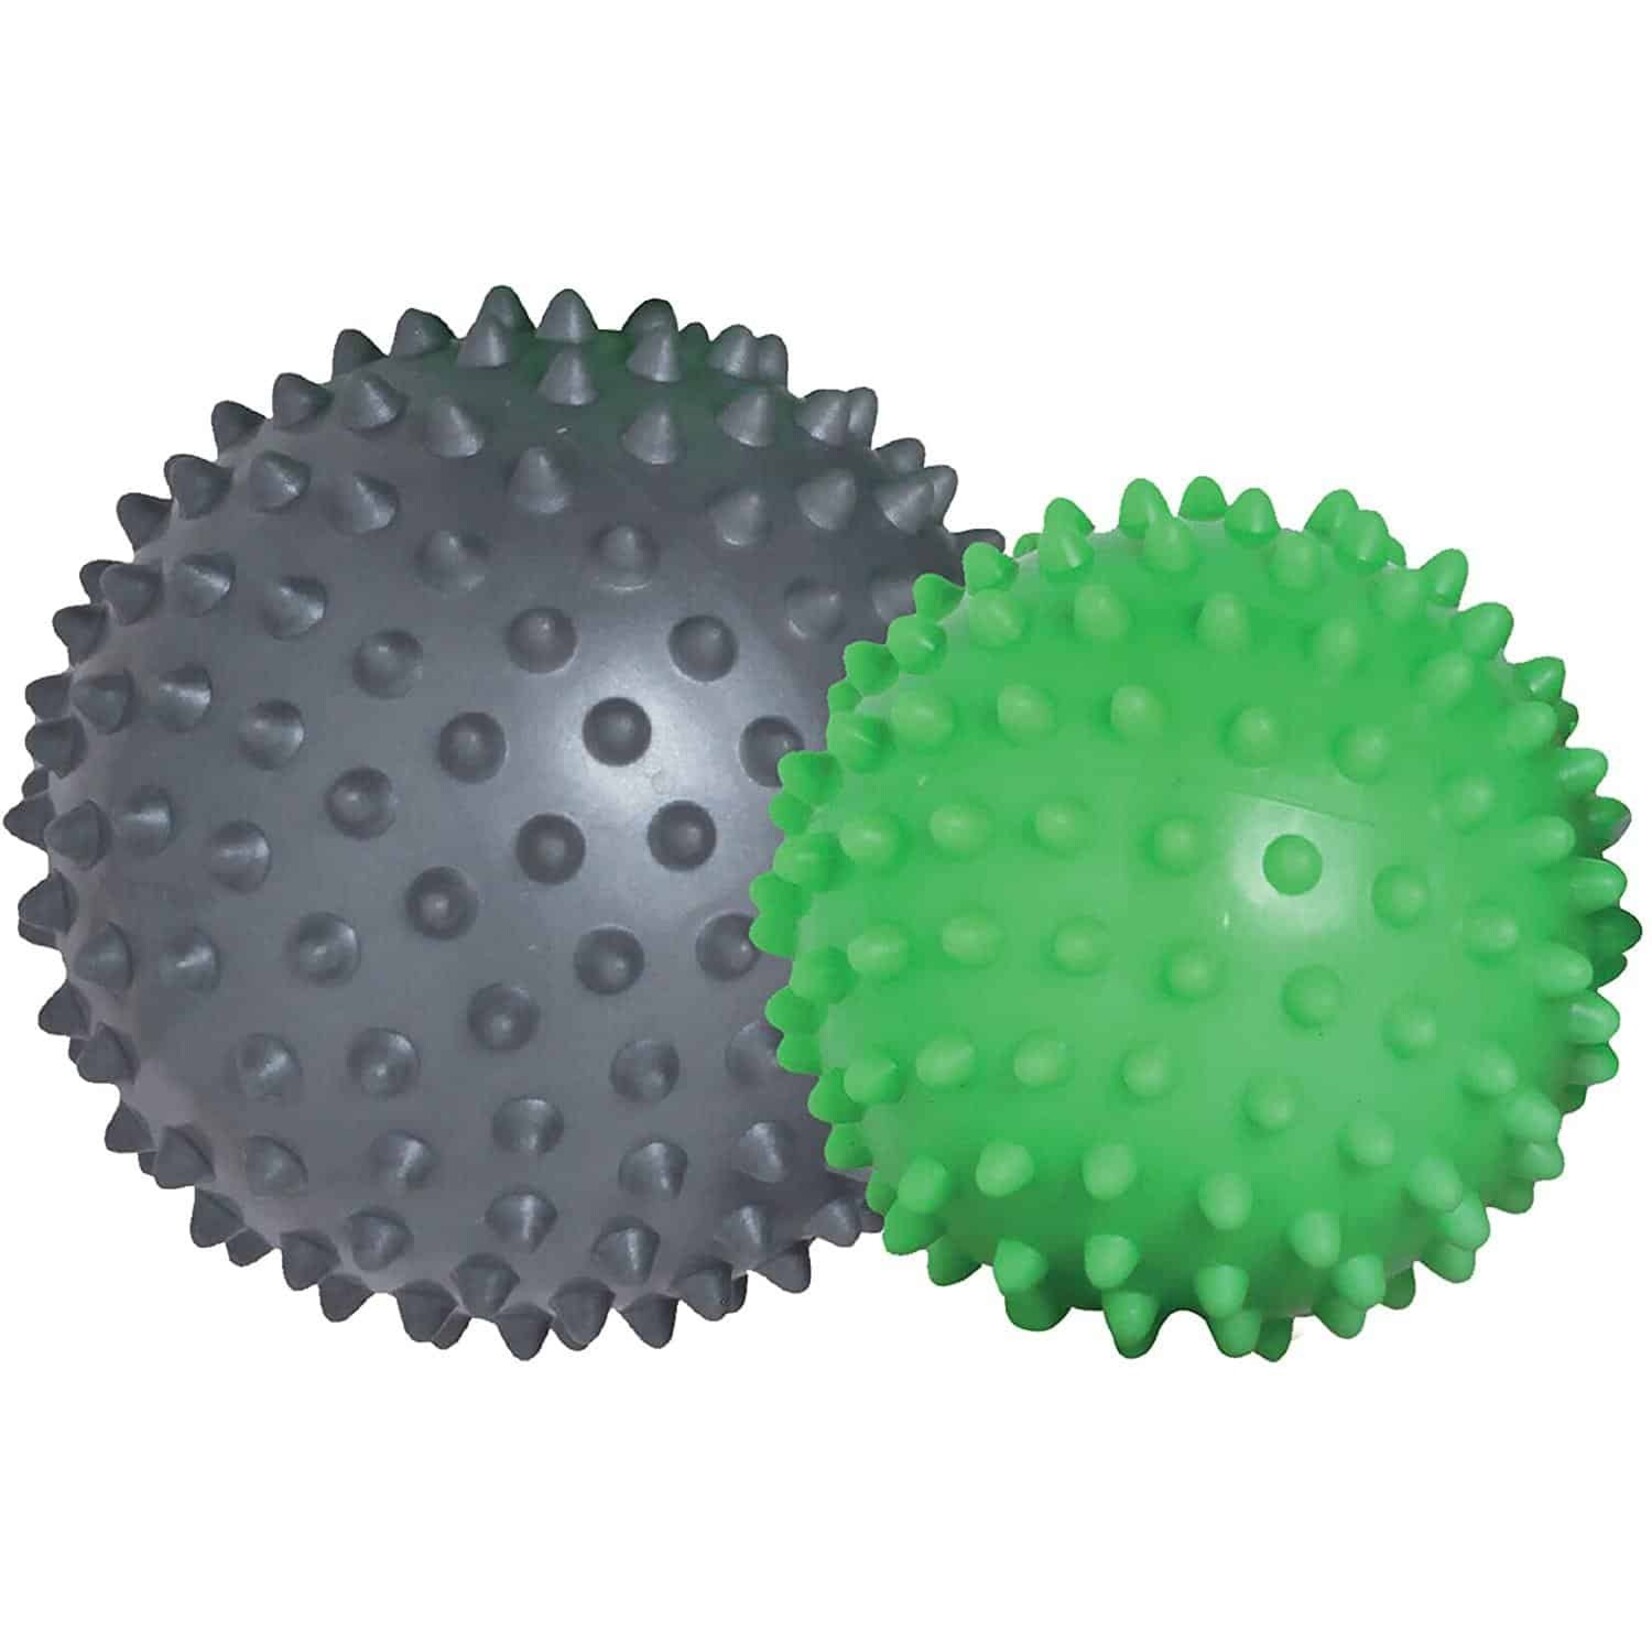 Spiky Massage Ball